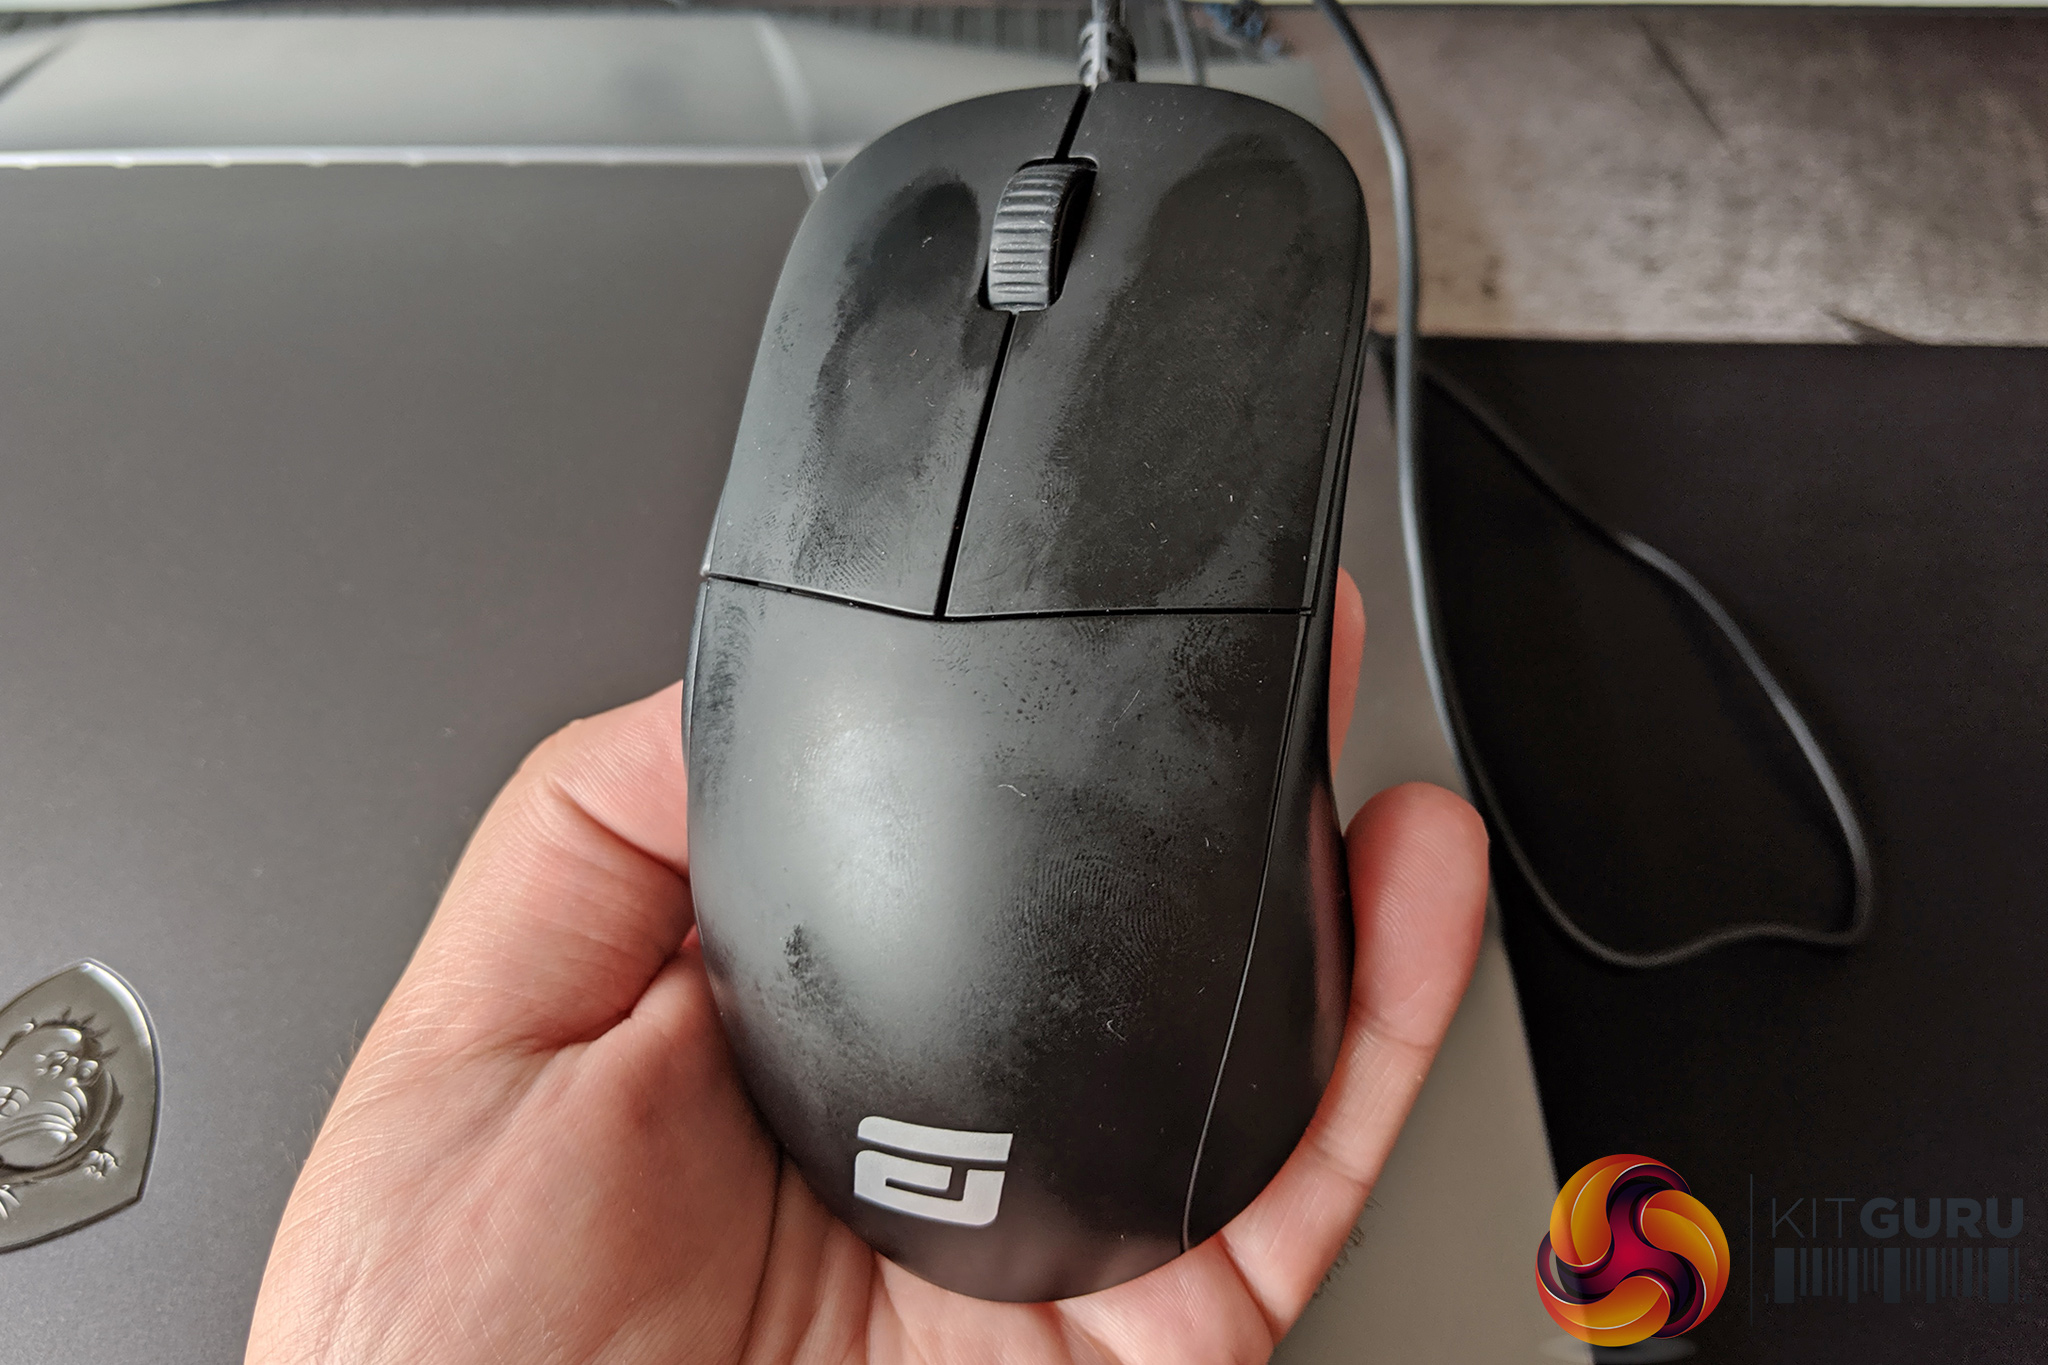 Endgame Gear Xm1 Mouse Review Kitguru